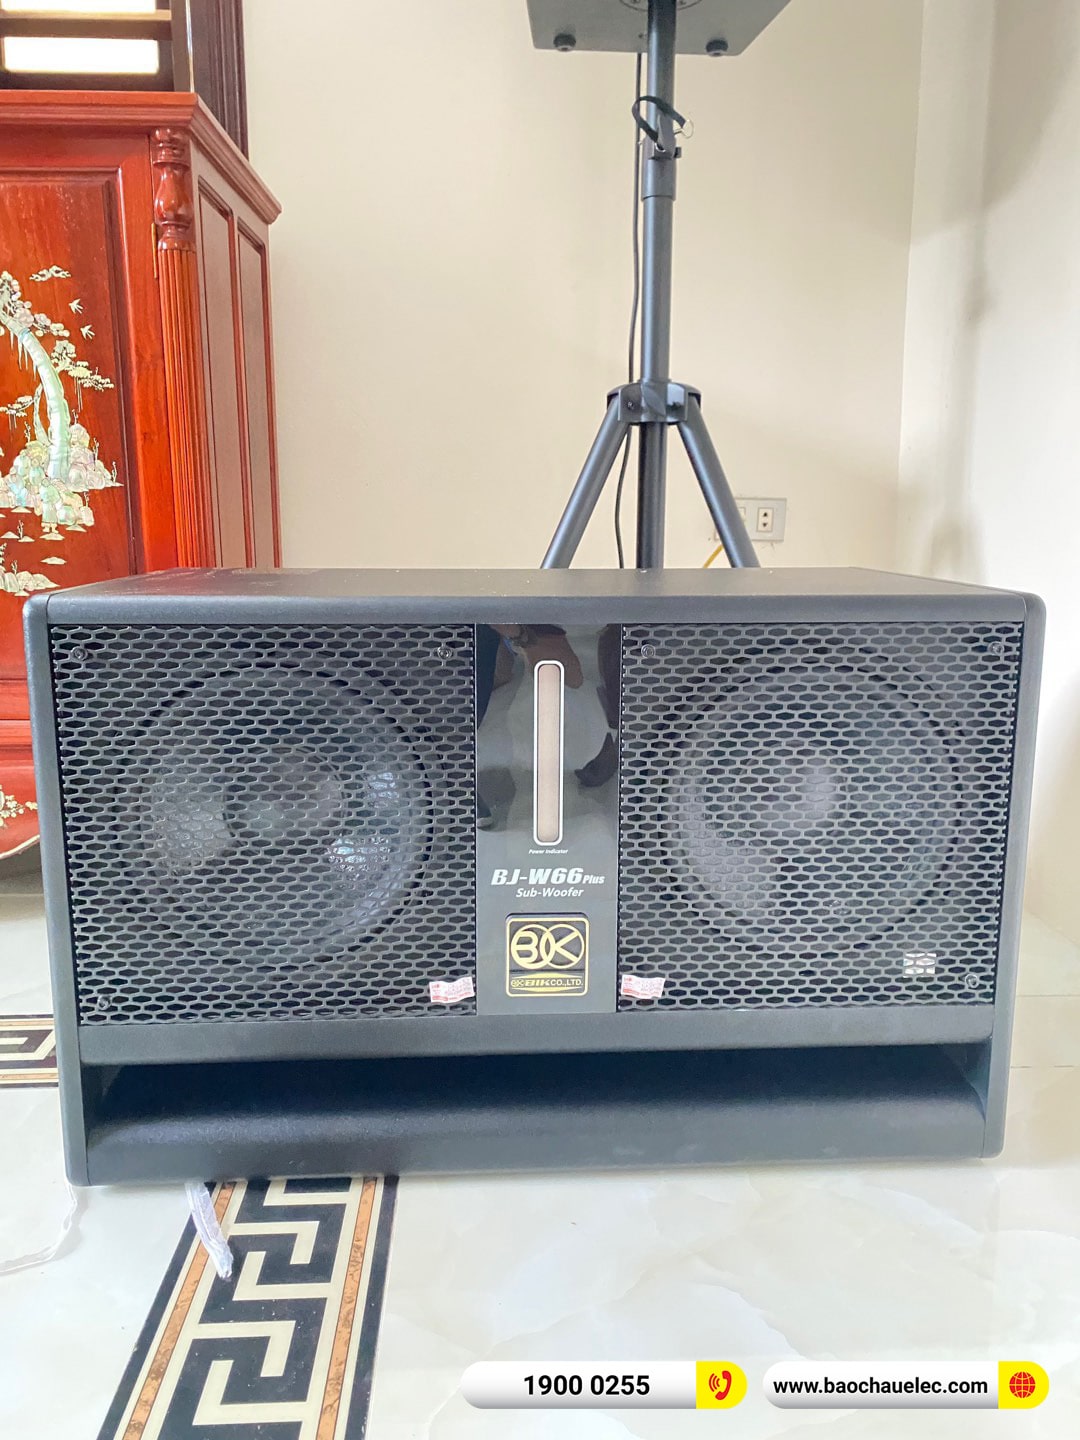 Lắp đặt dàn karaoke BMB hơn 59tr cho anh Trọng tại Bắc Ninh